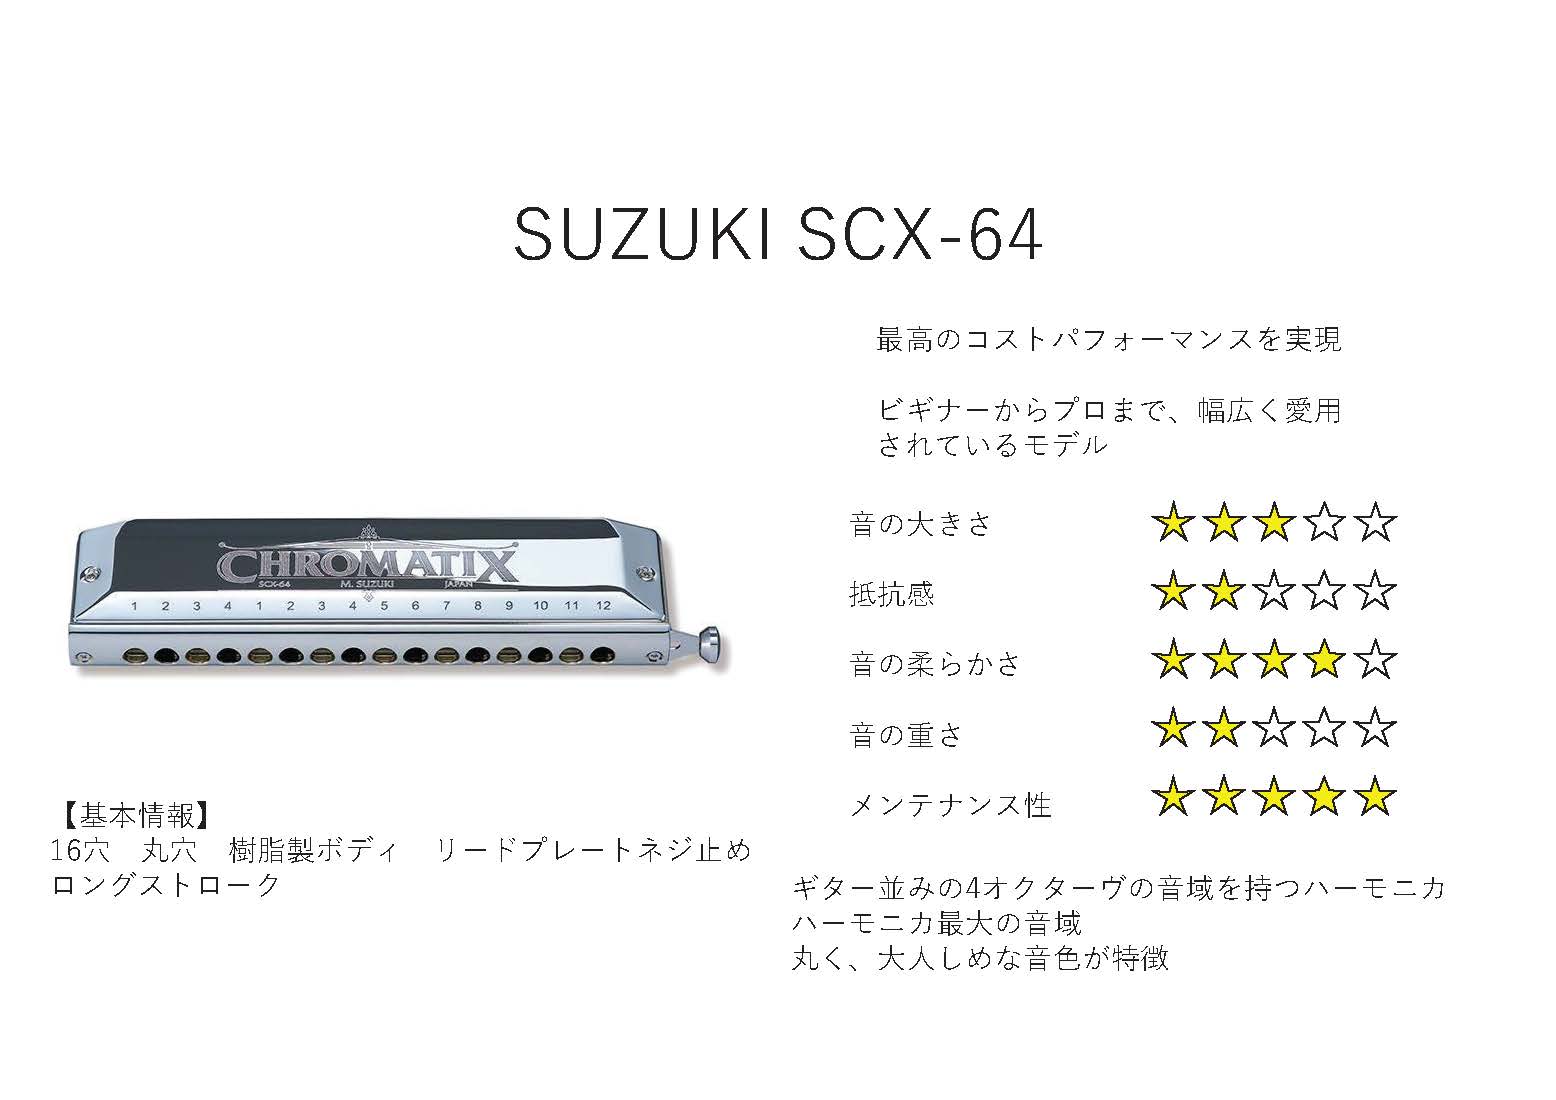 SUZUKI SCX-64 V2 【クロマチックハーモニカ】 / クロマチック 